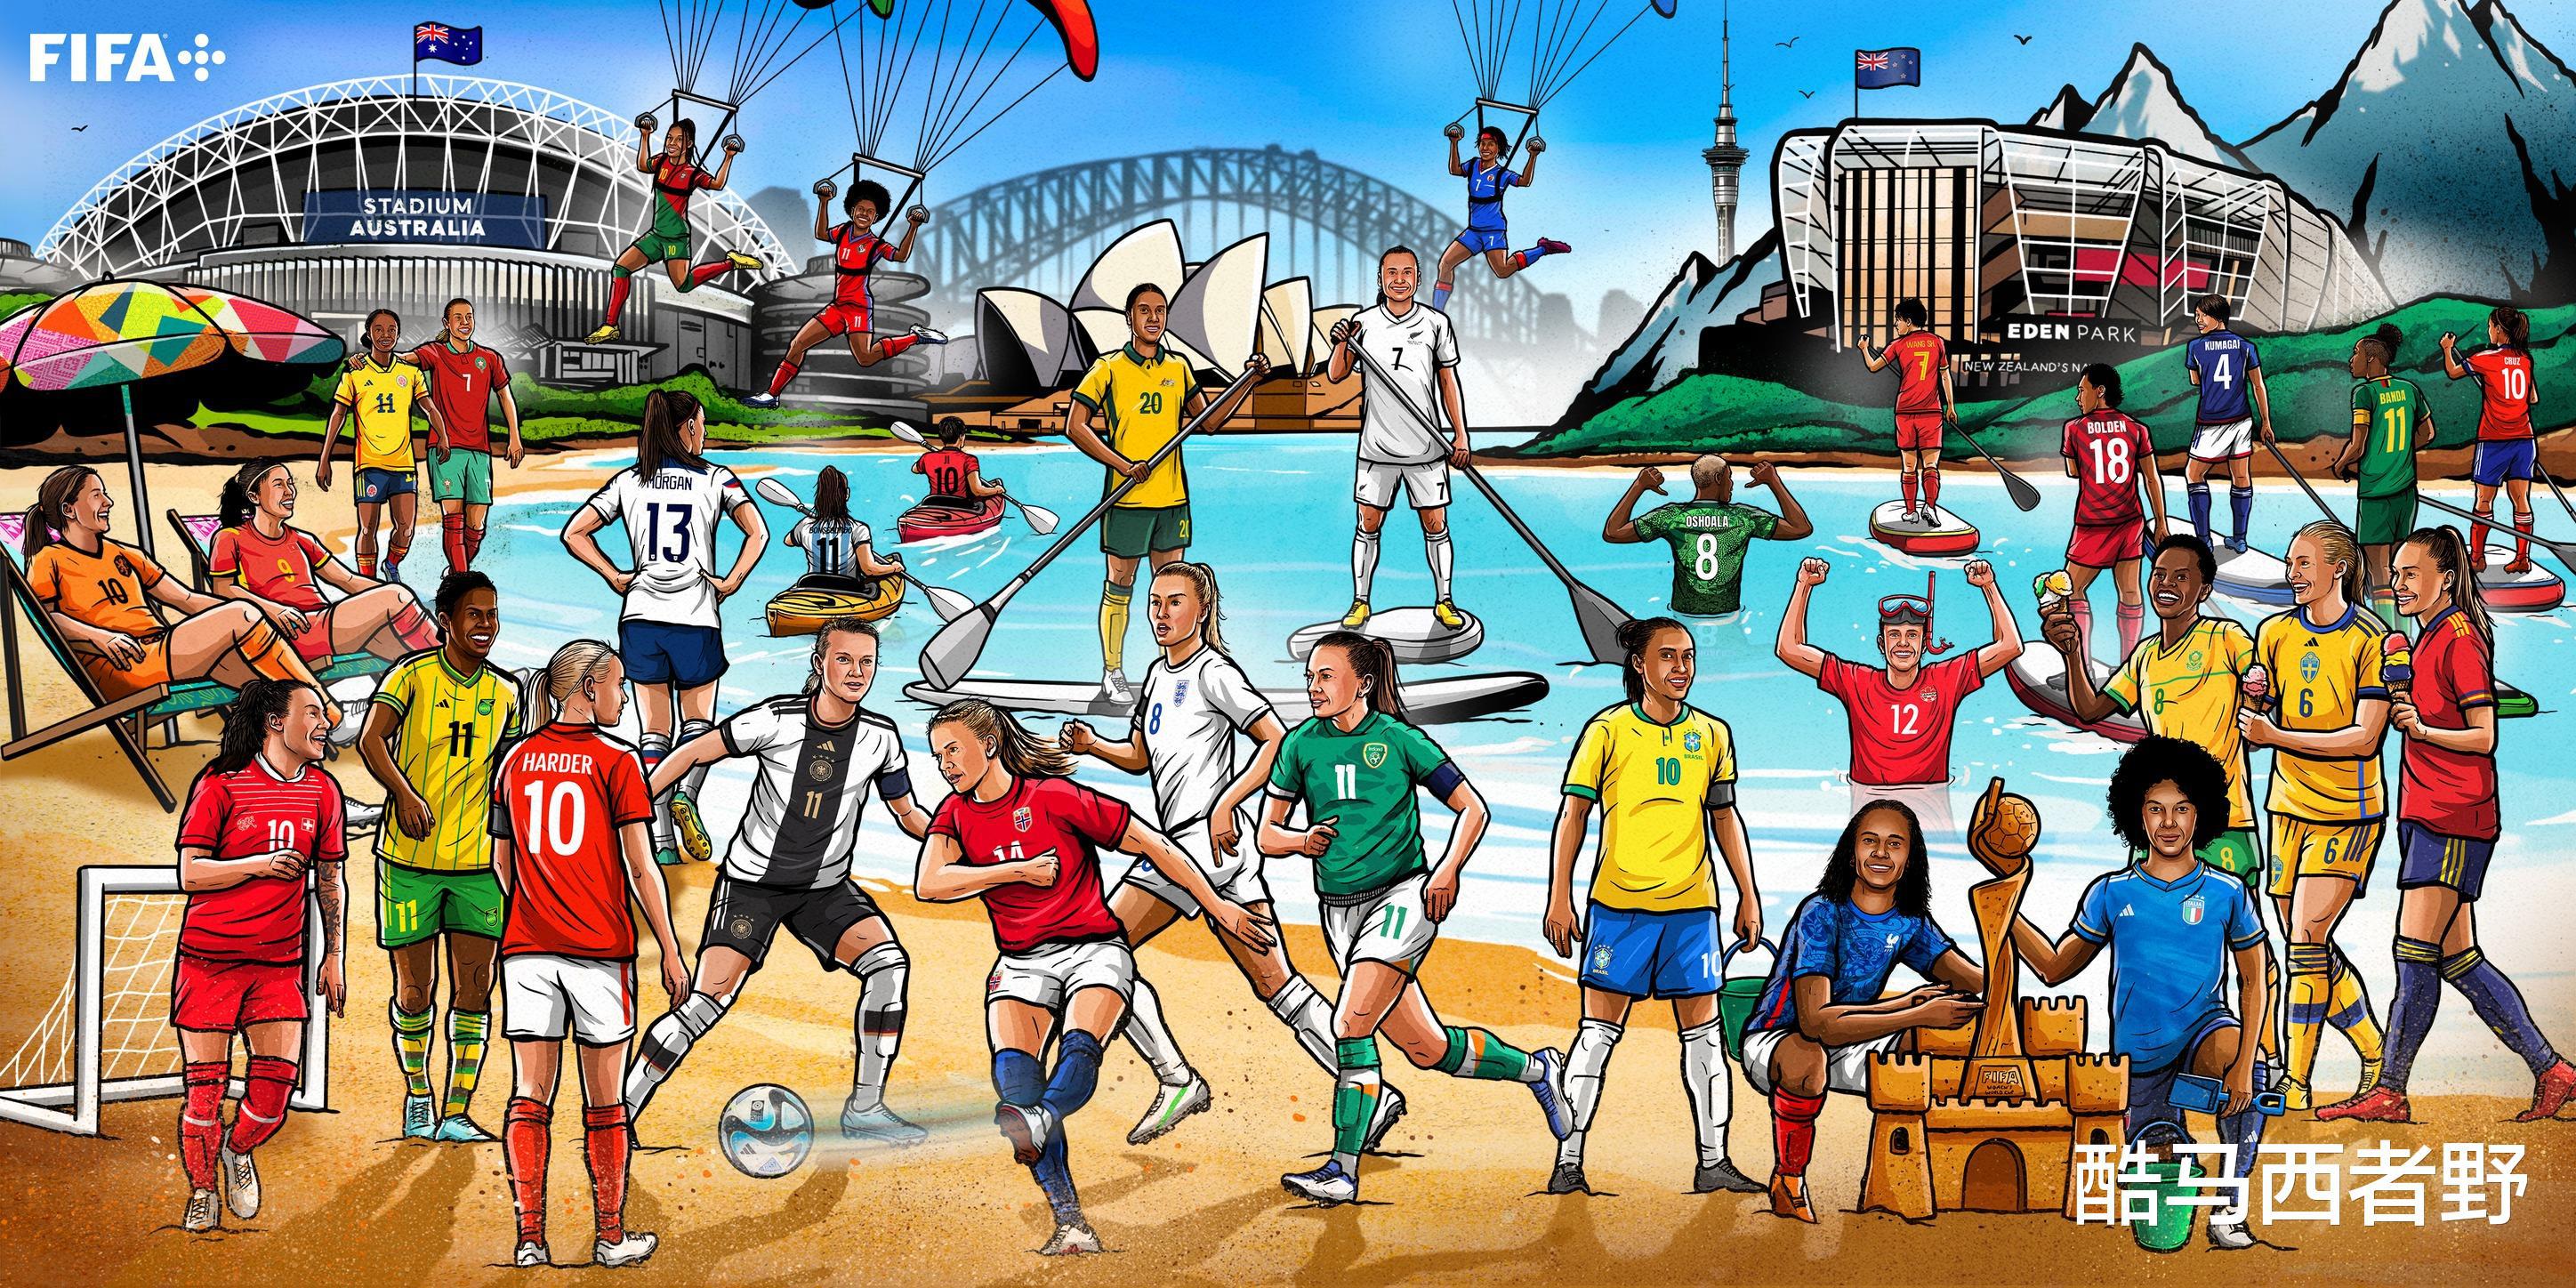 你能看懂吗？国际足联发布的女足世界杯参赛队画作